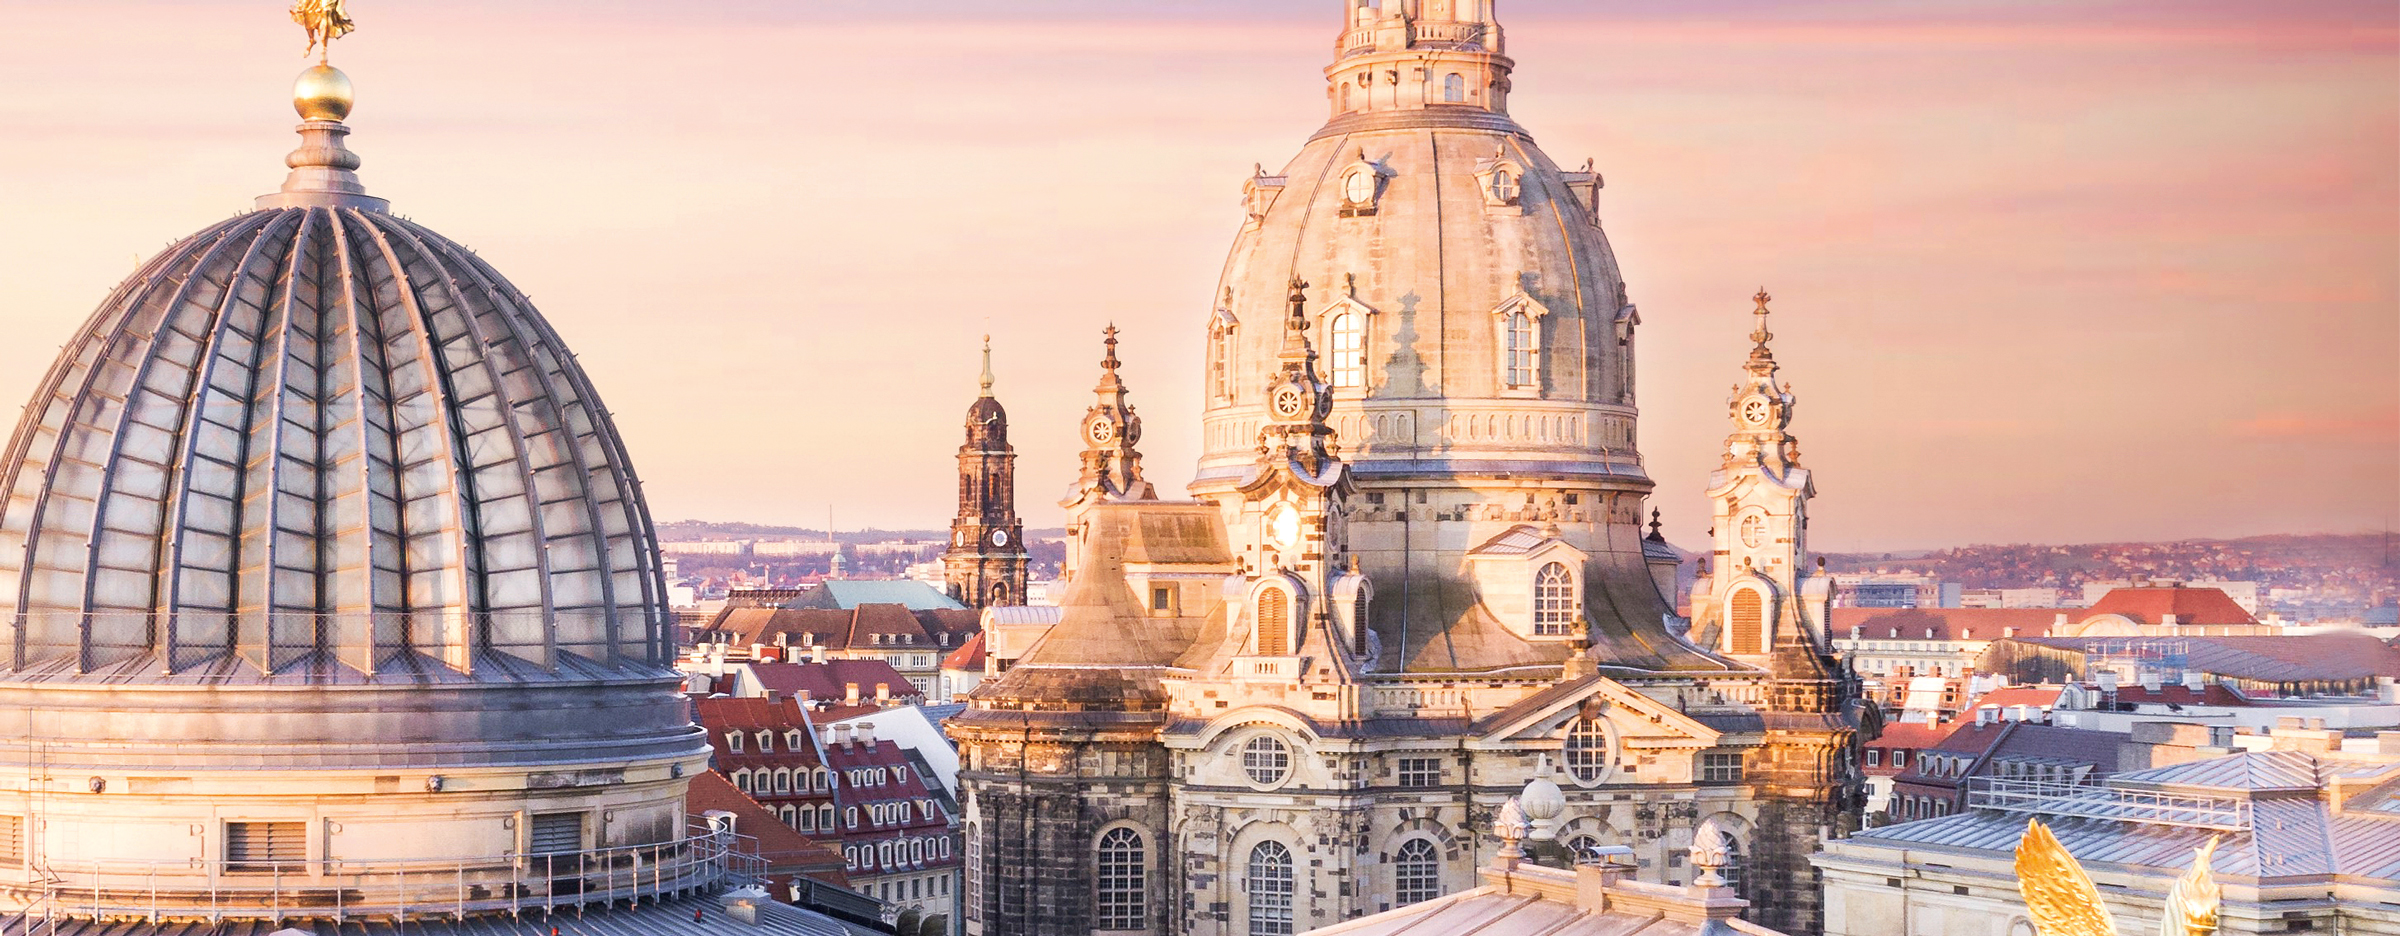 Das Bild zeigt die historische Altstadt von oben mit Blick auf die Frauenkirche Dresden. Mit Klick auf das Bild öffnet sich der Film auf youtube zum Hochtechnologiestandort Dresden.